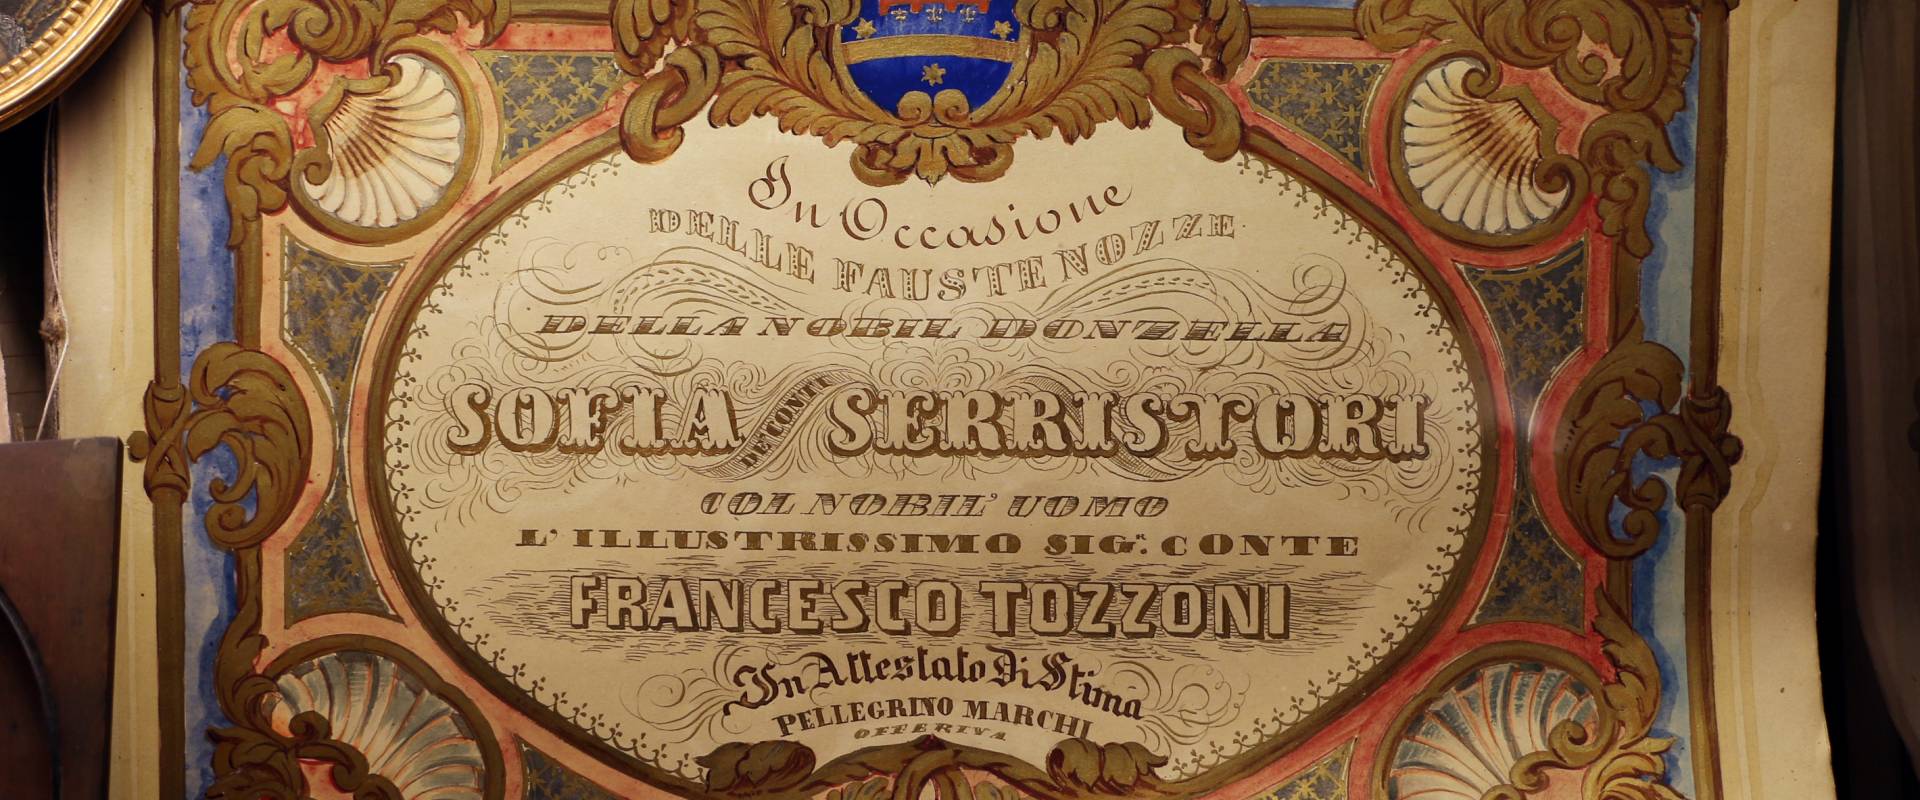 Imola, palazzo tozzoni, album per il matrimonio di francesco tozzoni con sofia serristori, xix secolo foto di Sailko